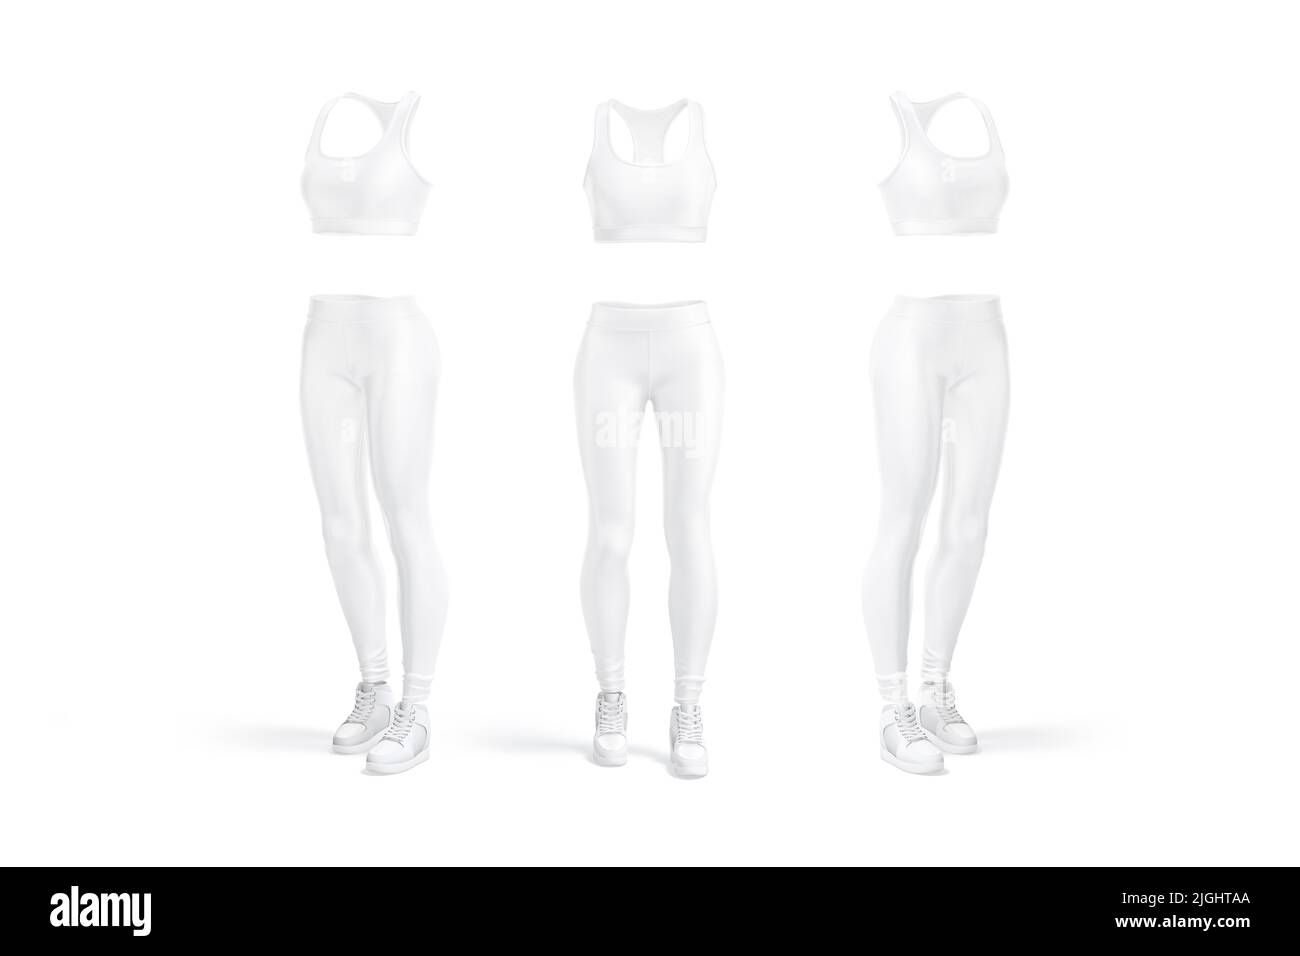 Moqueta de uniforme deportivo blanco para mujeres en blanco, vista frontal y lateral Foto de stock